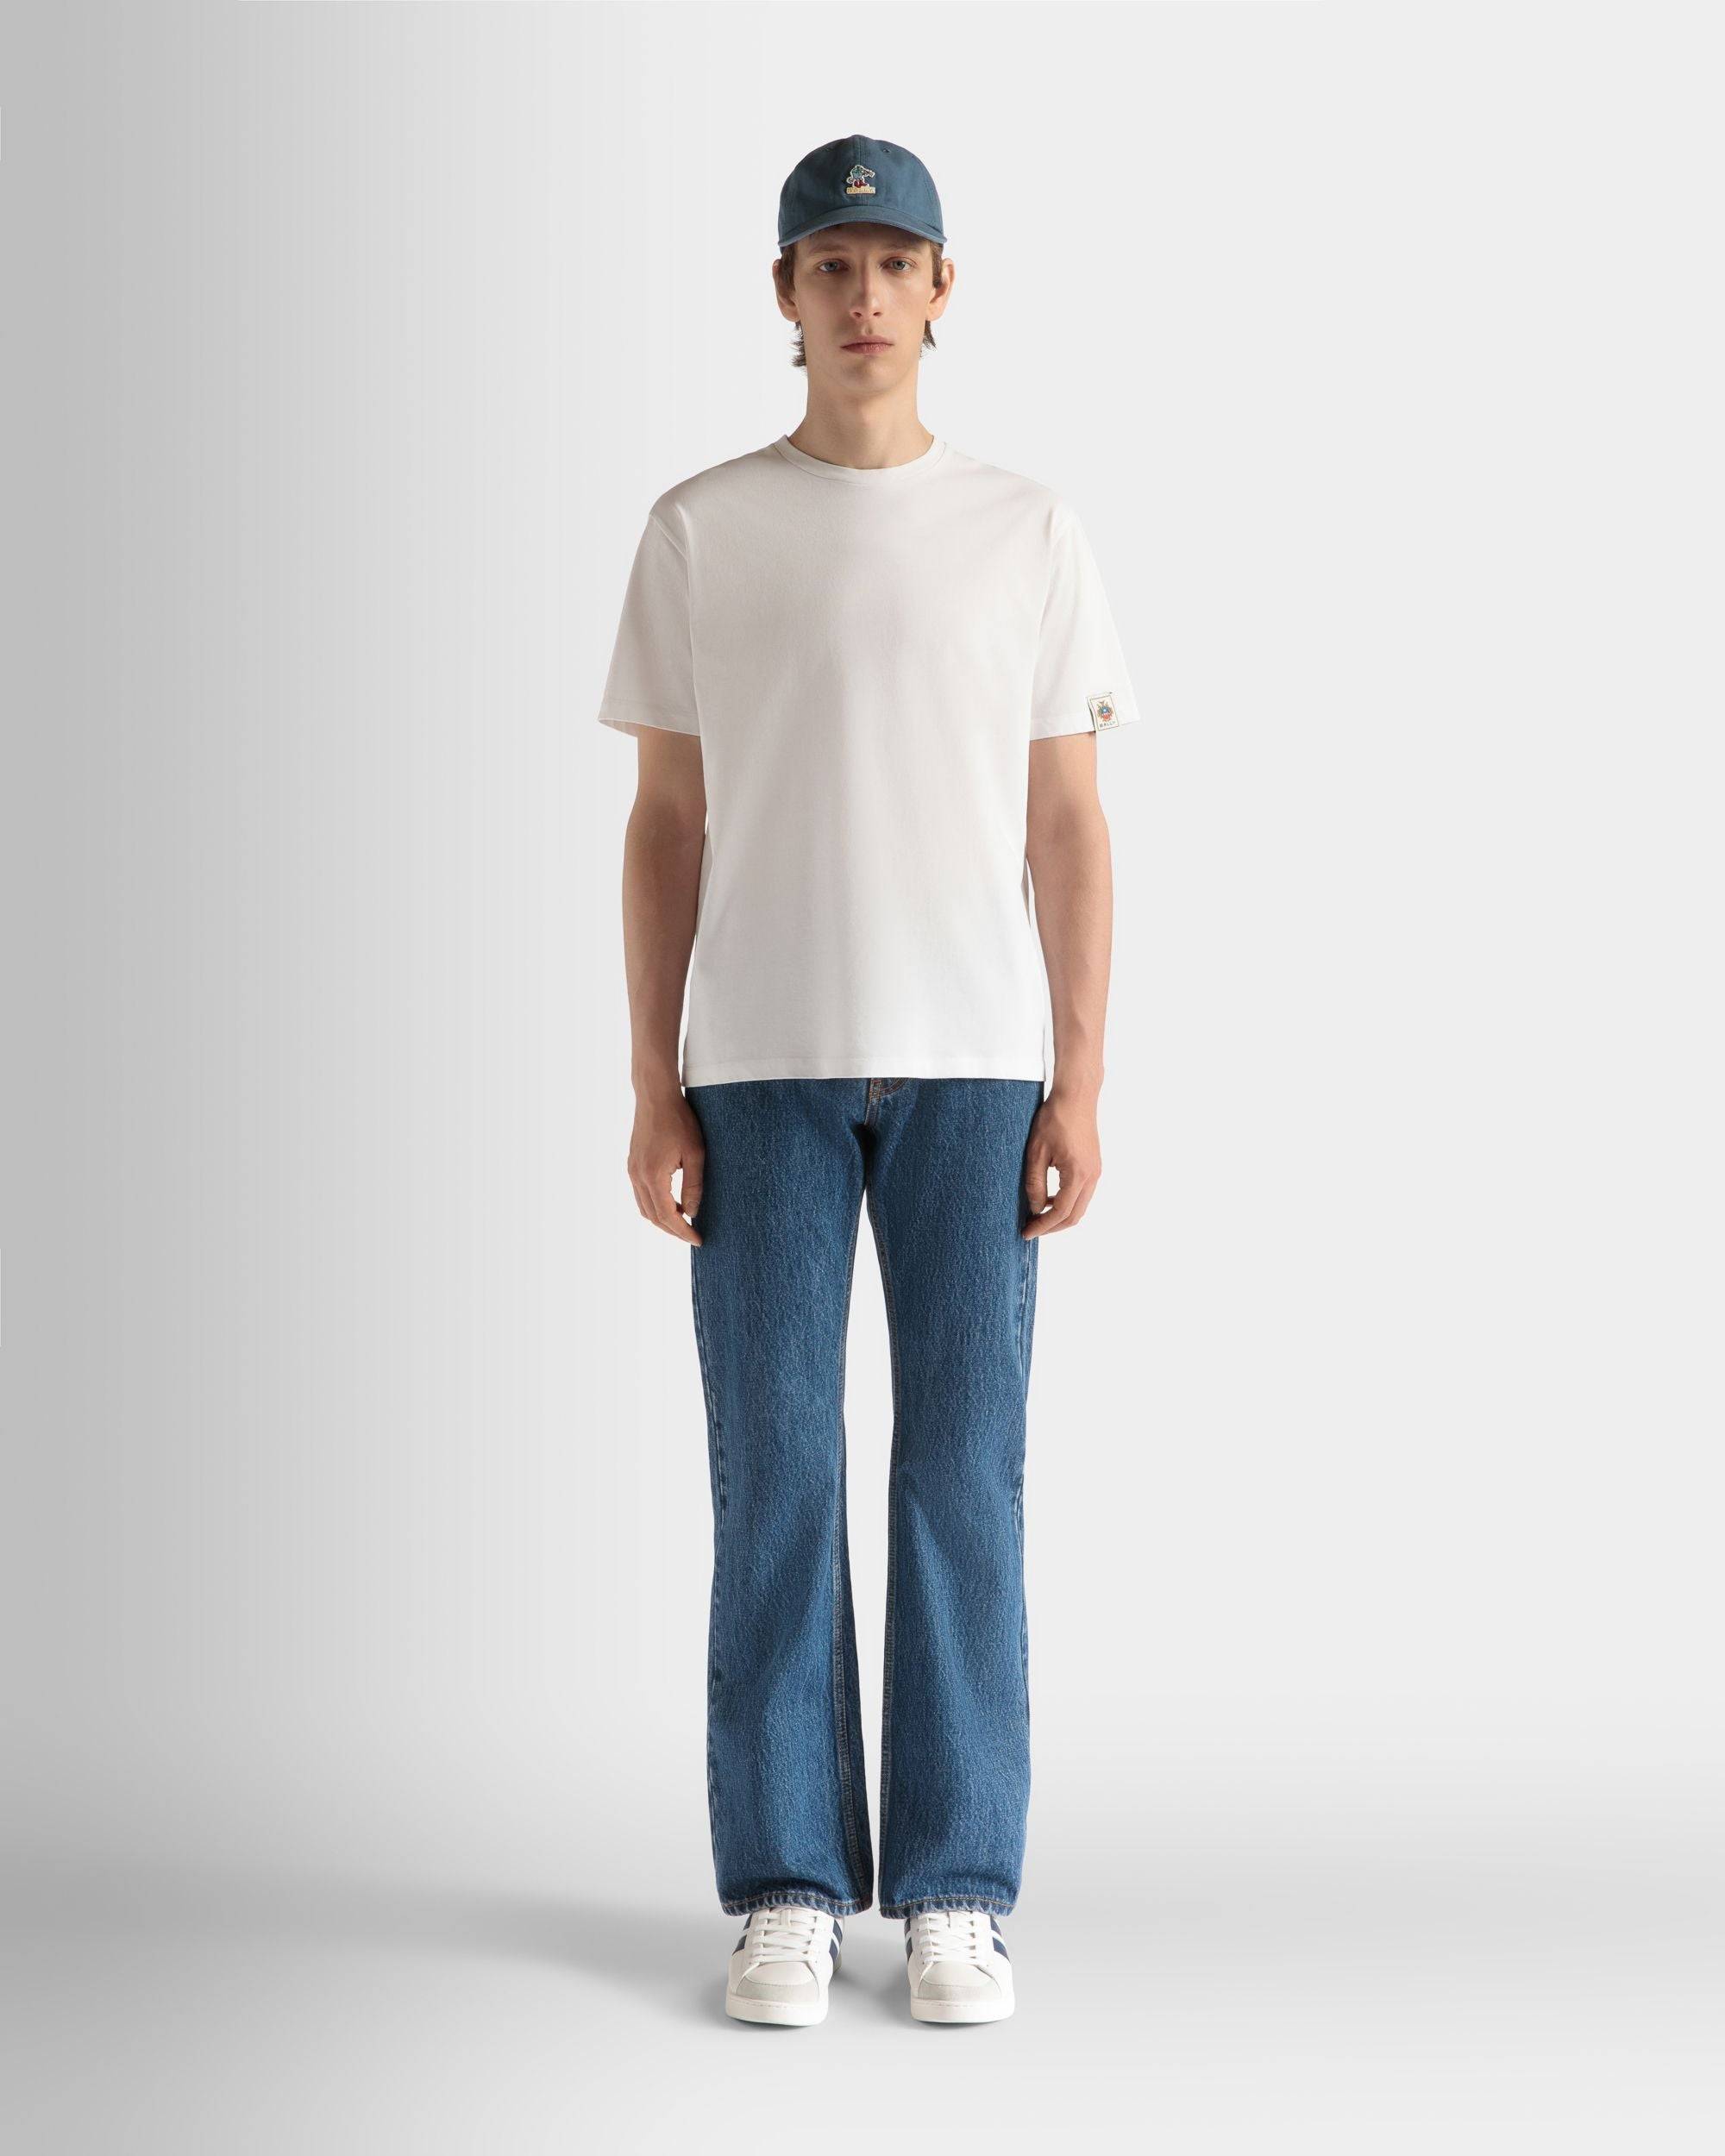 T-Shirt Aus Baumwolle In Weiß - Herren - Bally - 02